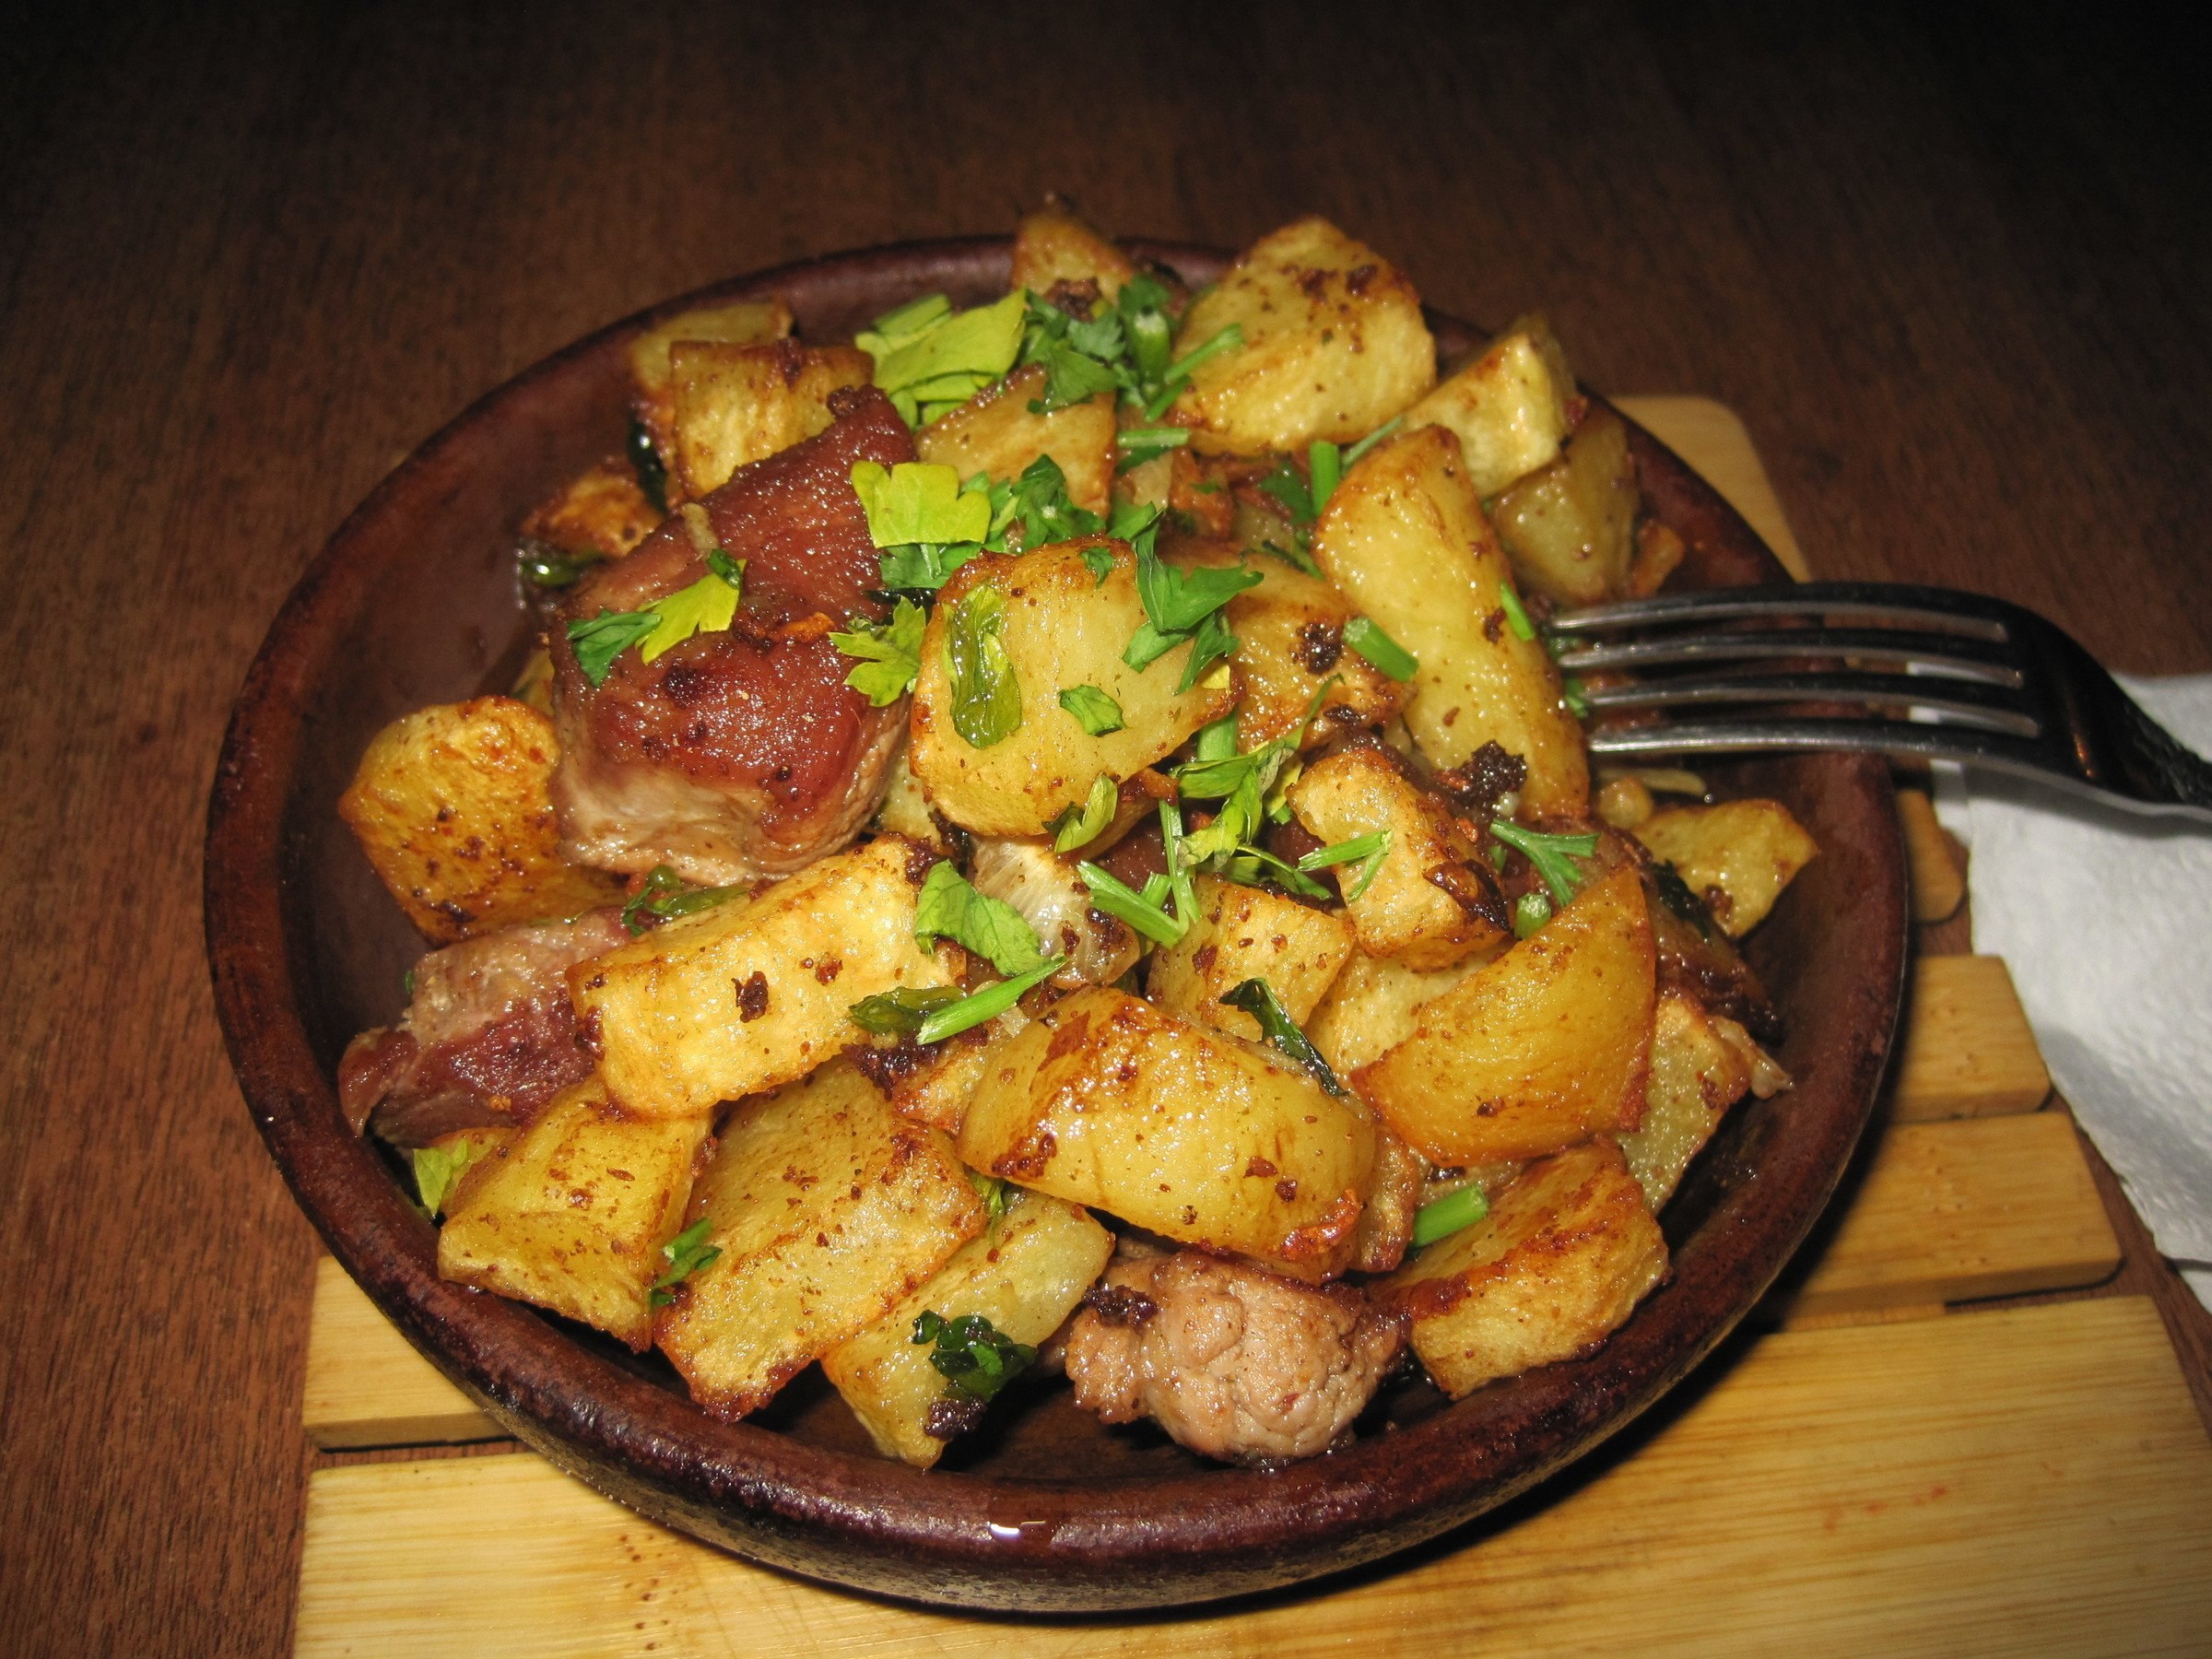 Хорошо картошку с мясом. Жареная картошка с мясом. Картофель жареный с мясом. Жареная картошка с мясом и луком на сковороде. Жаркое с мясом и картошкой.